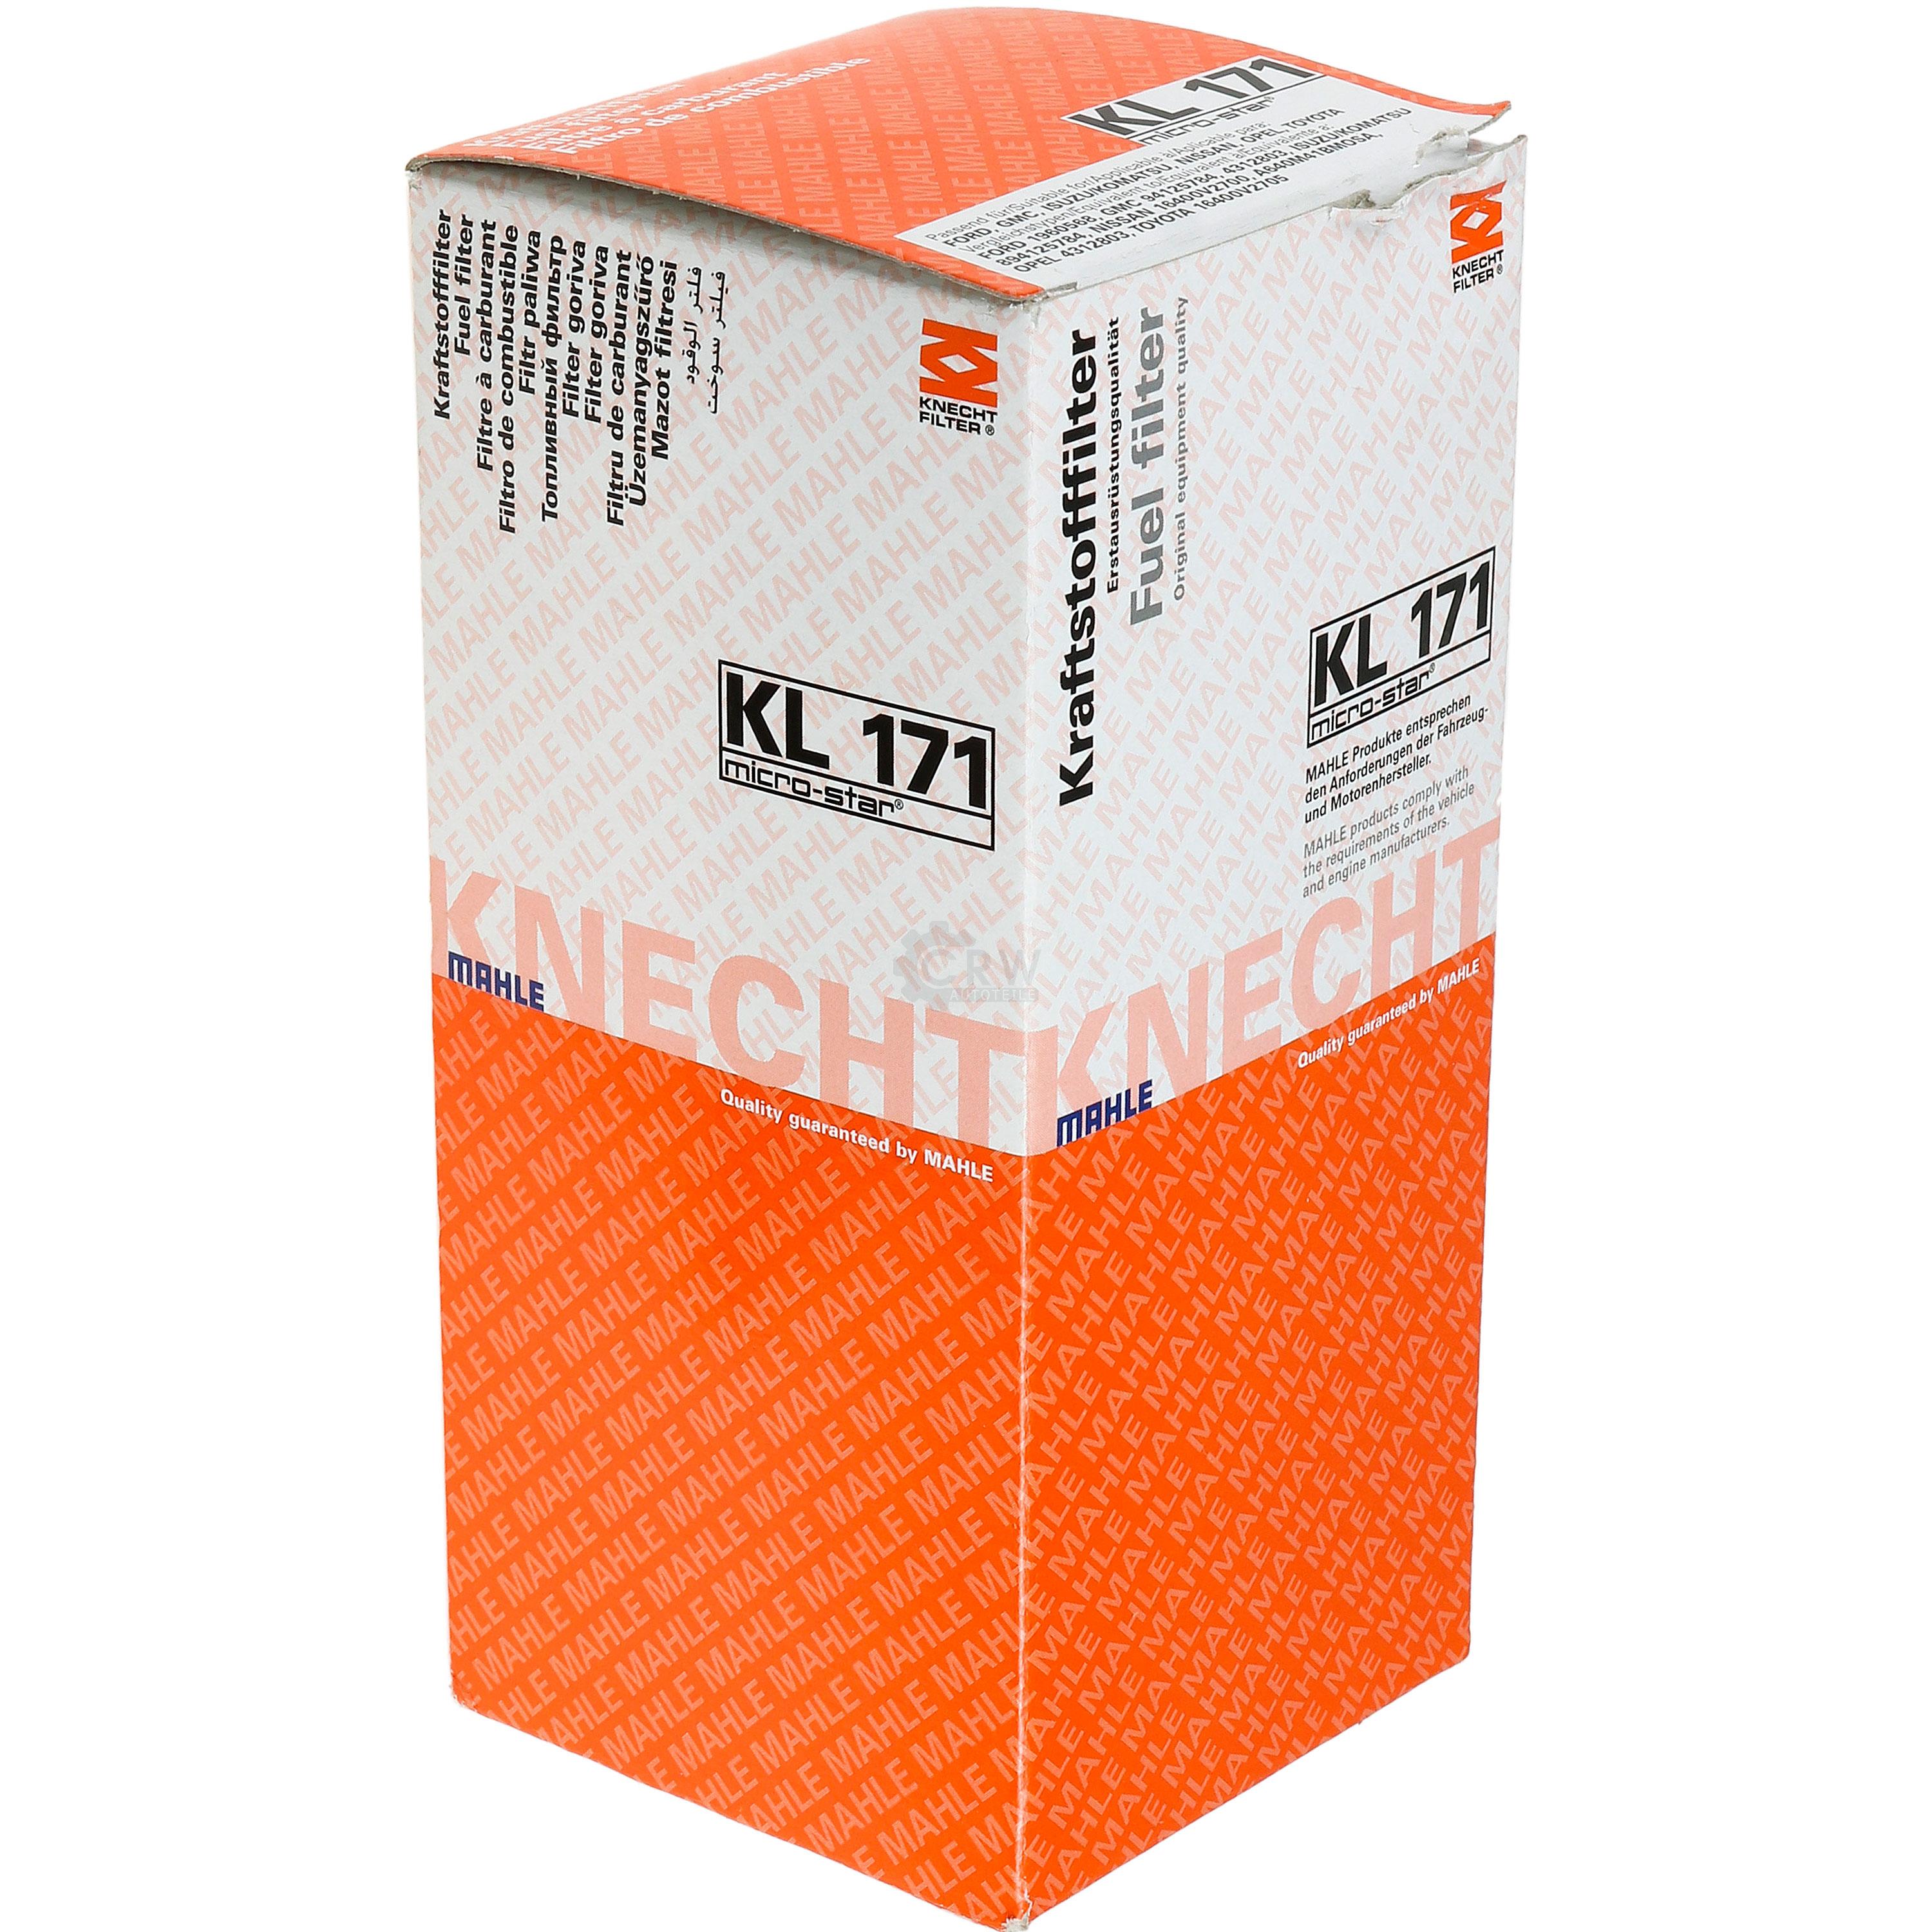 MAHLE Kraftstofffilter KL 171 Fuel Filter